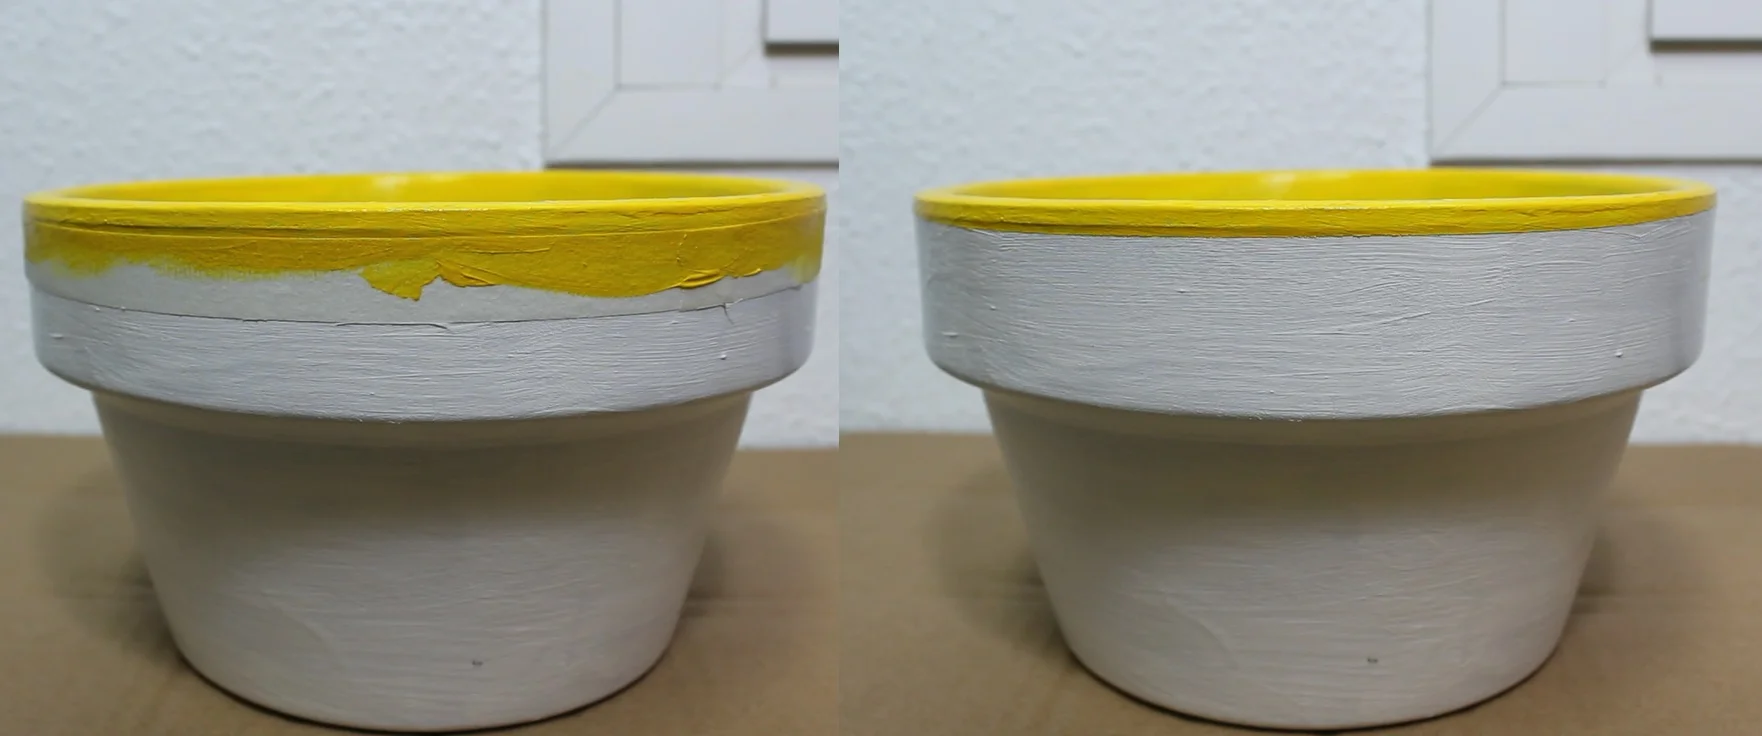 Pintando borde amarillo a maceta usando cinta de pintor para hacer líneas rectas